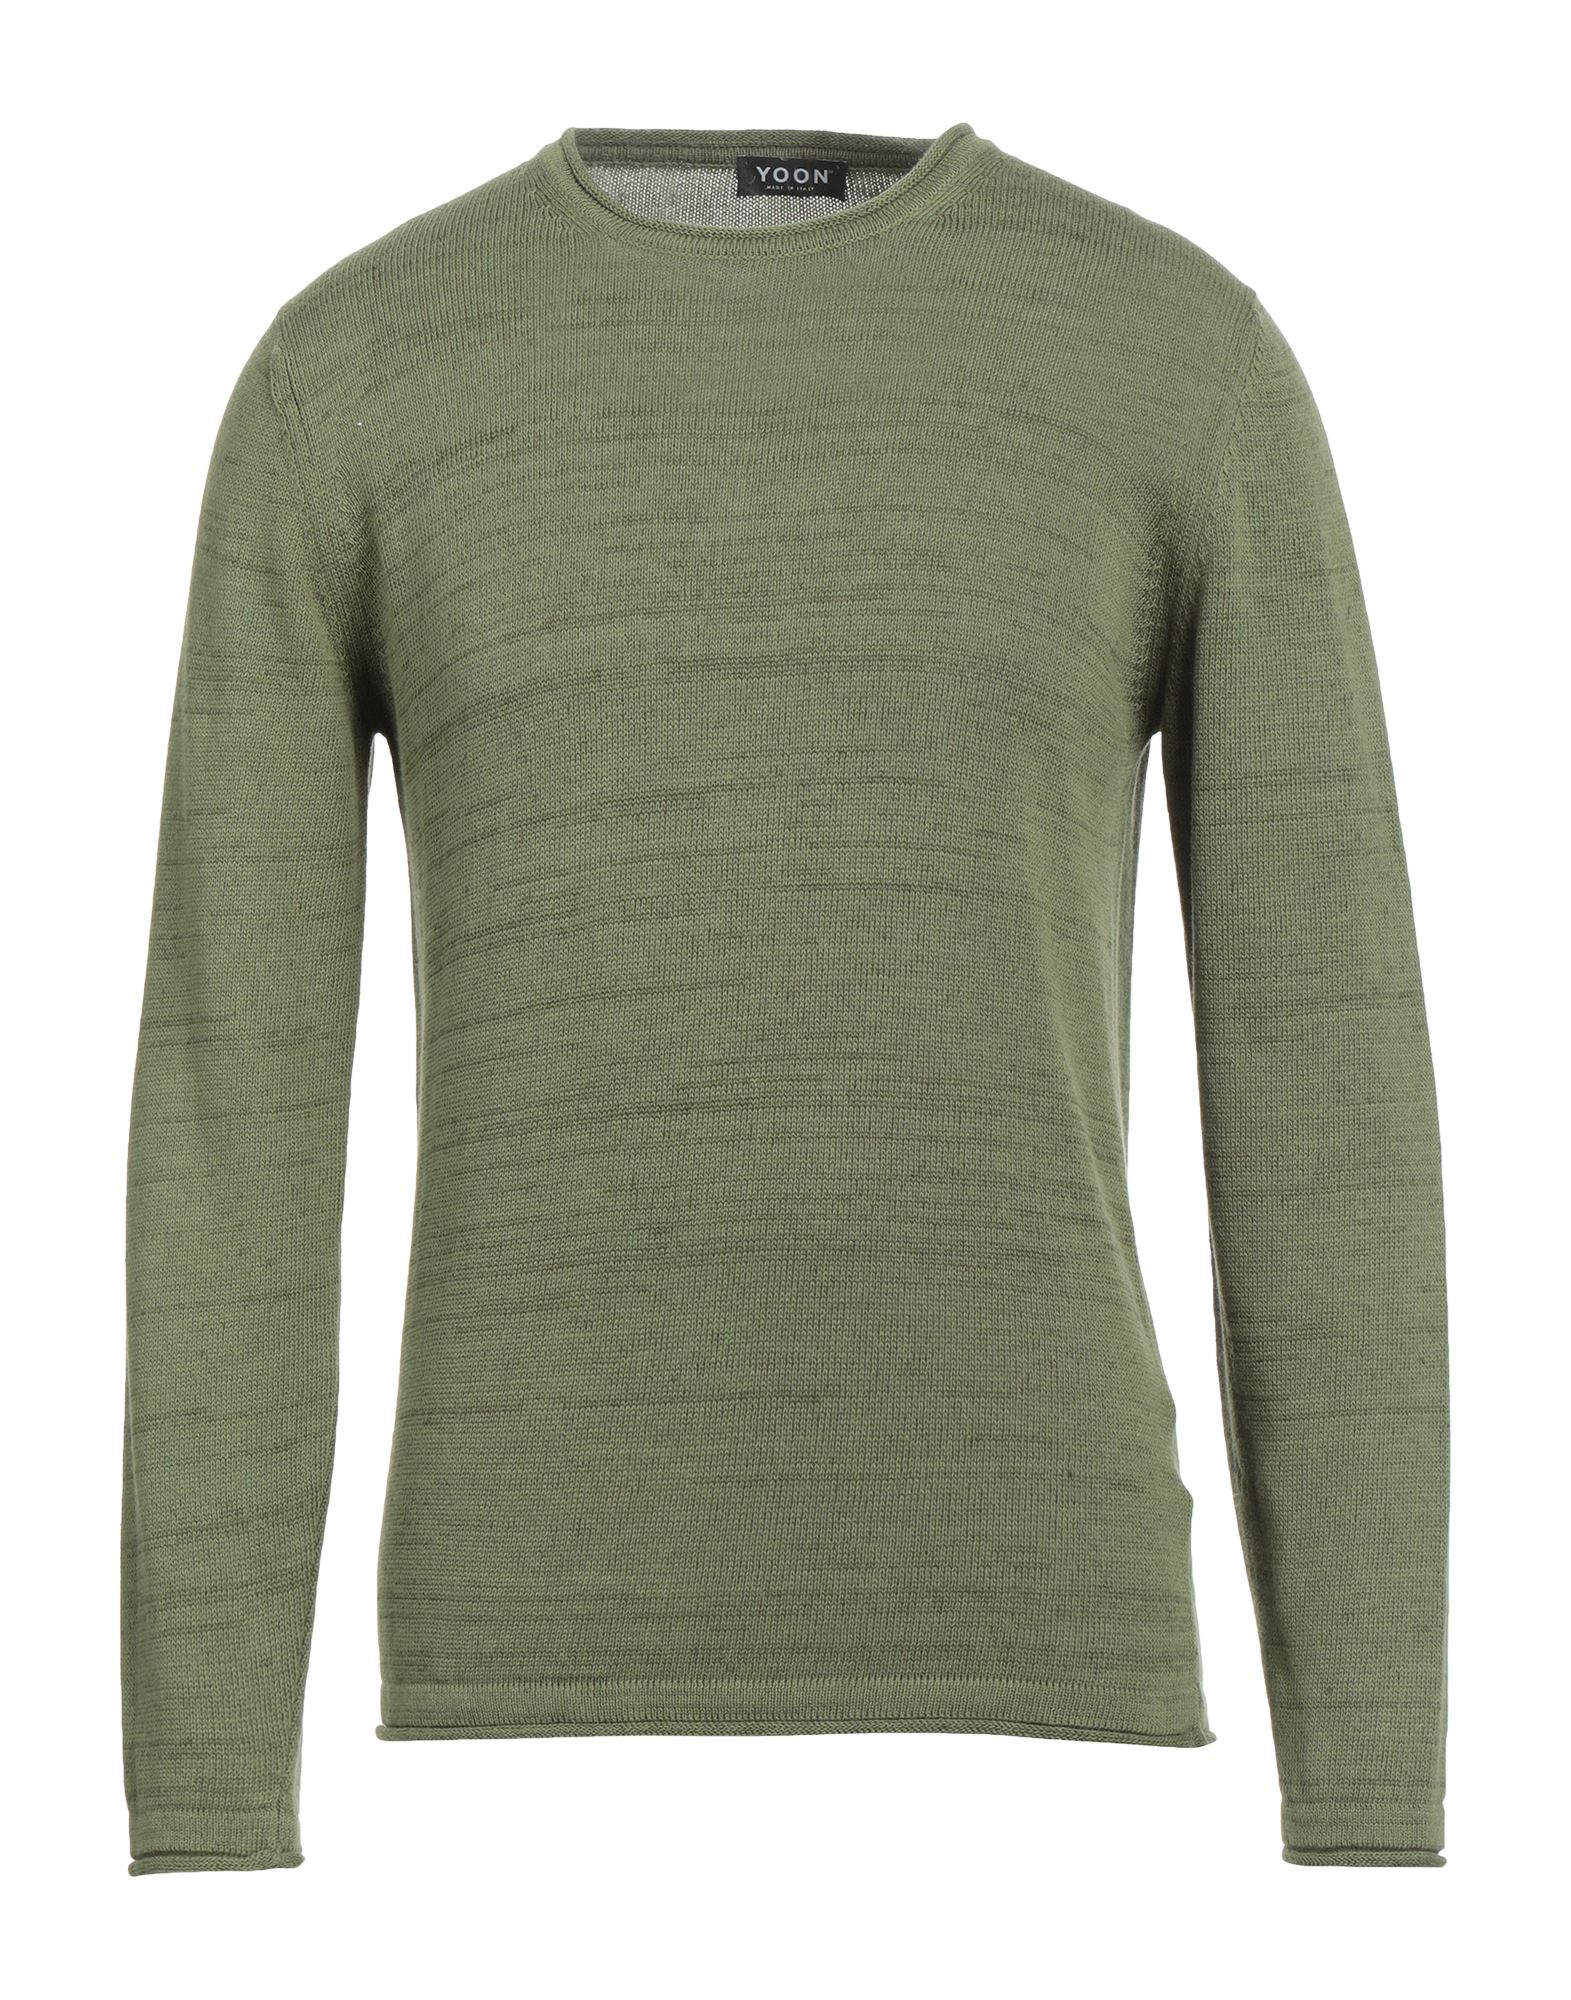 Yoon Sweaters In Green